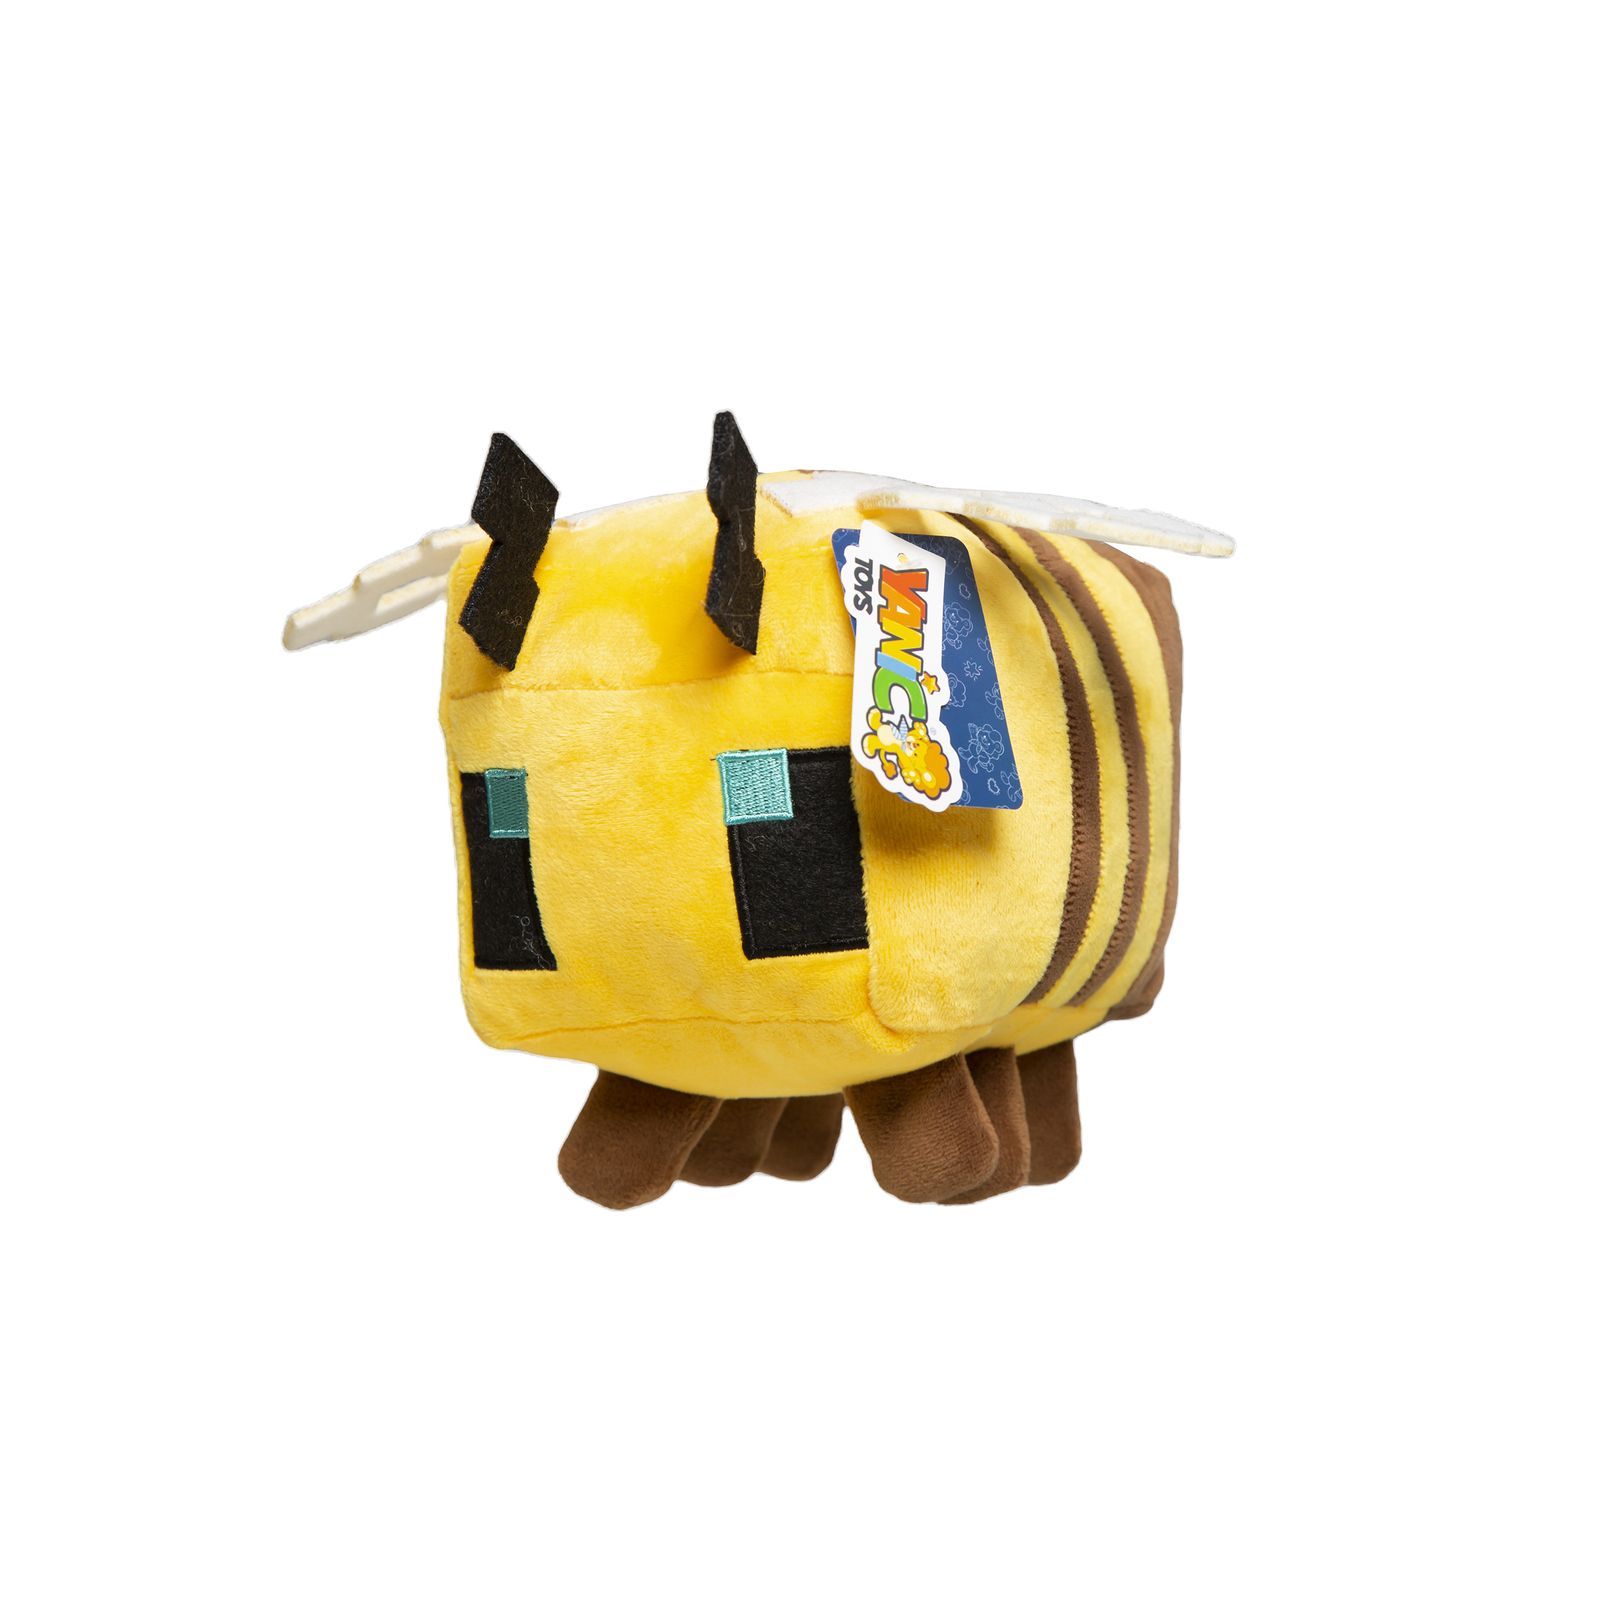 عروسک یانیک مدل شخصیت ماینکرافت زنبور کد 100272 ارتفاع 15 سانتیمتر -  - 1